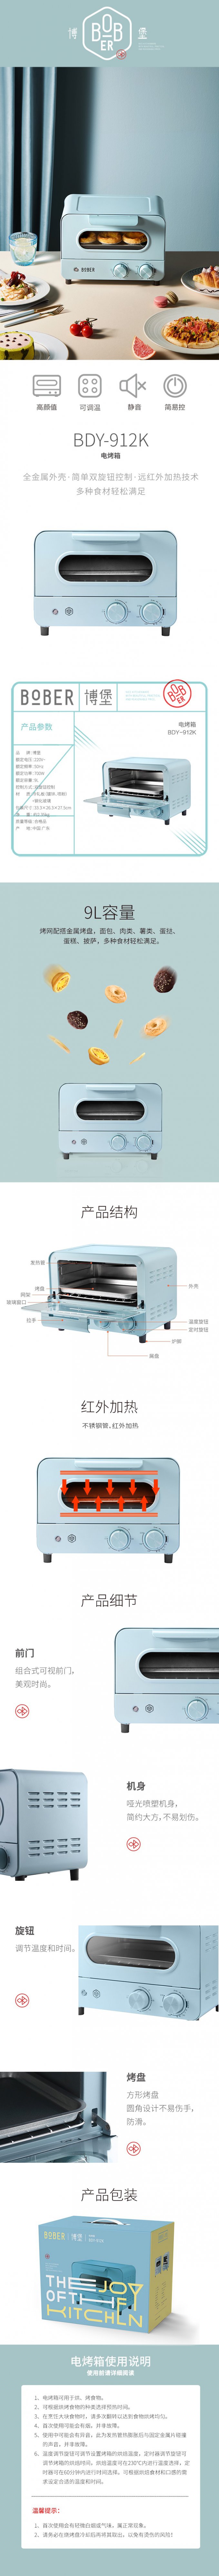 电烤箱BDY-912K-790px.jpg